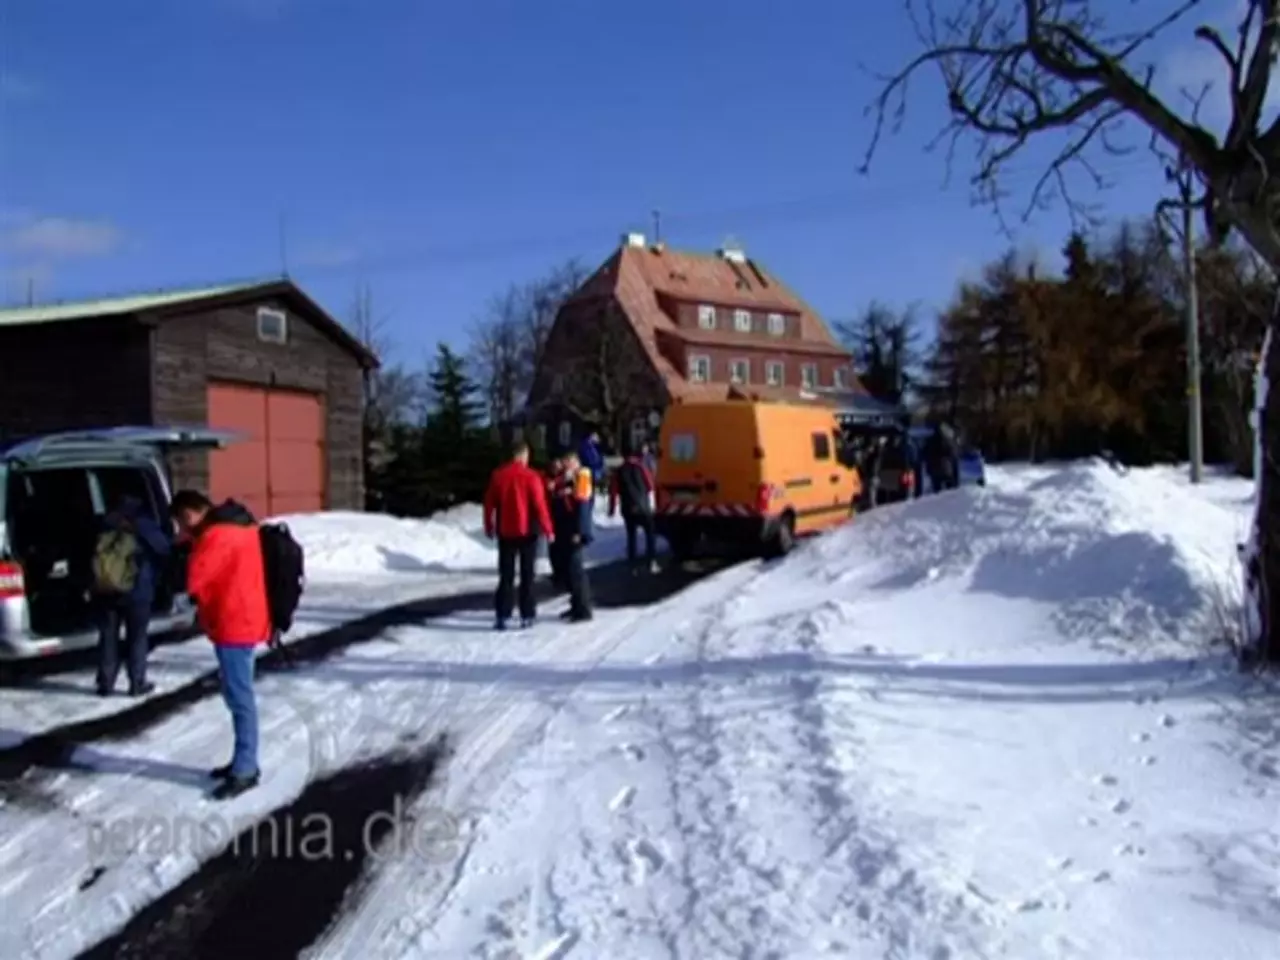 Foto: Fotogalerie von der Skiwanderung der Bürgerbewegung Gegenwind am 27.2.2010